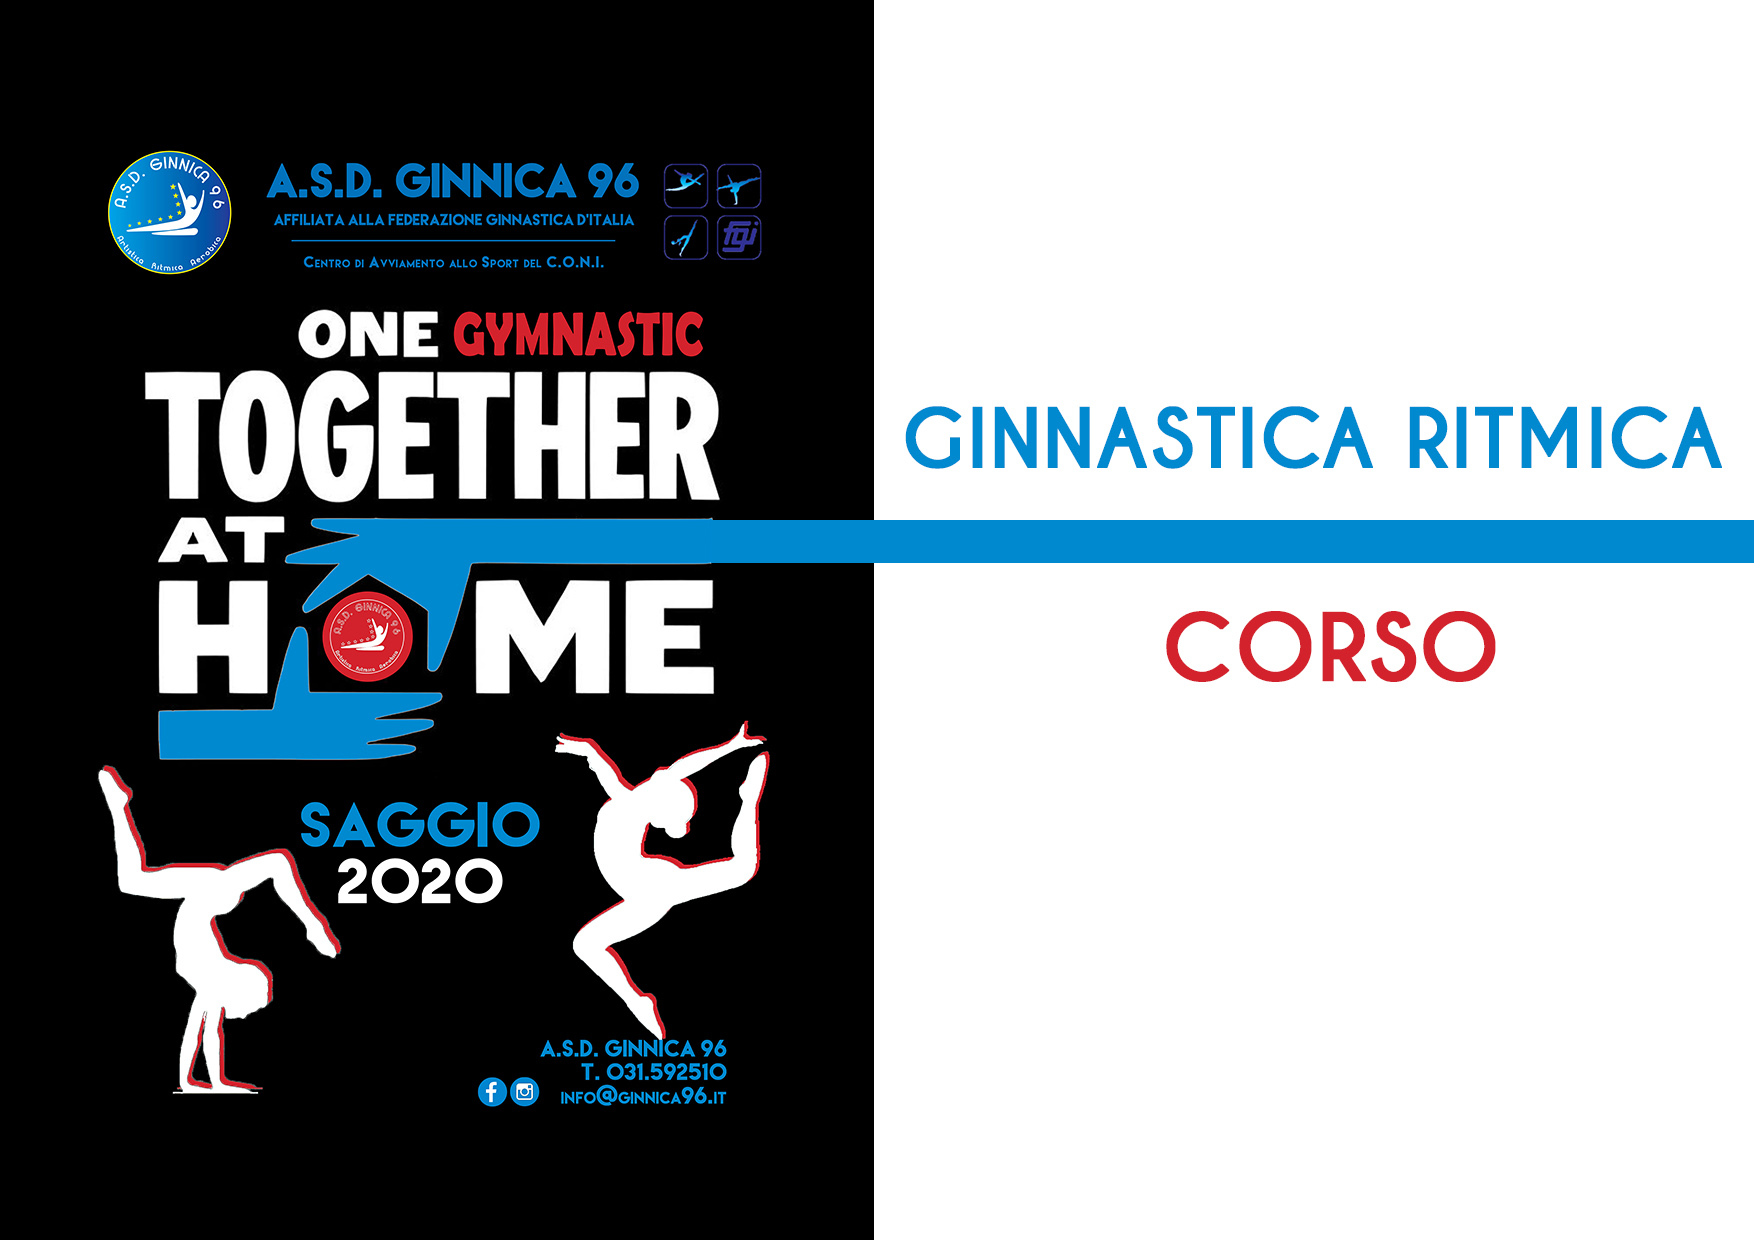 A.S.D. Ginnica 96 – SAGGIO 2020 – Ginnastica Ritmica Corso